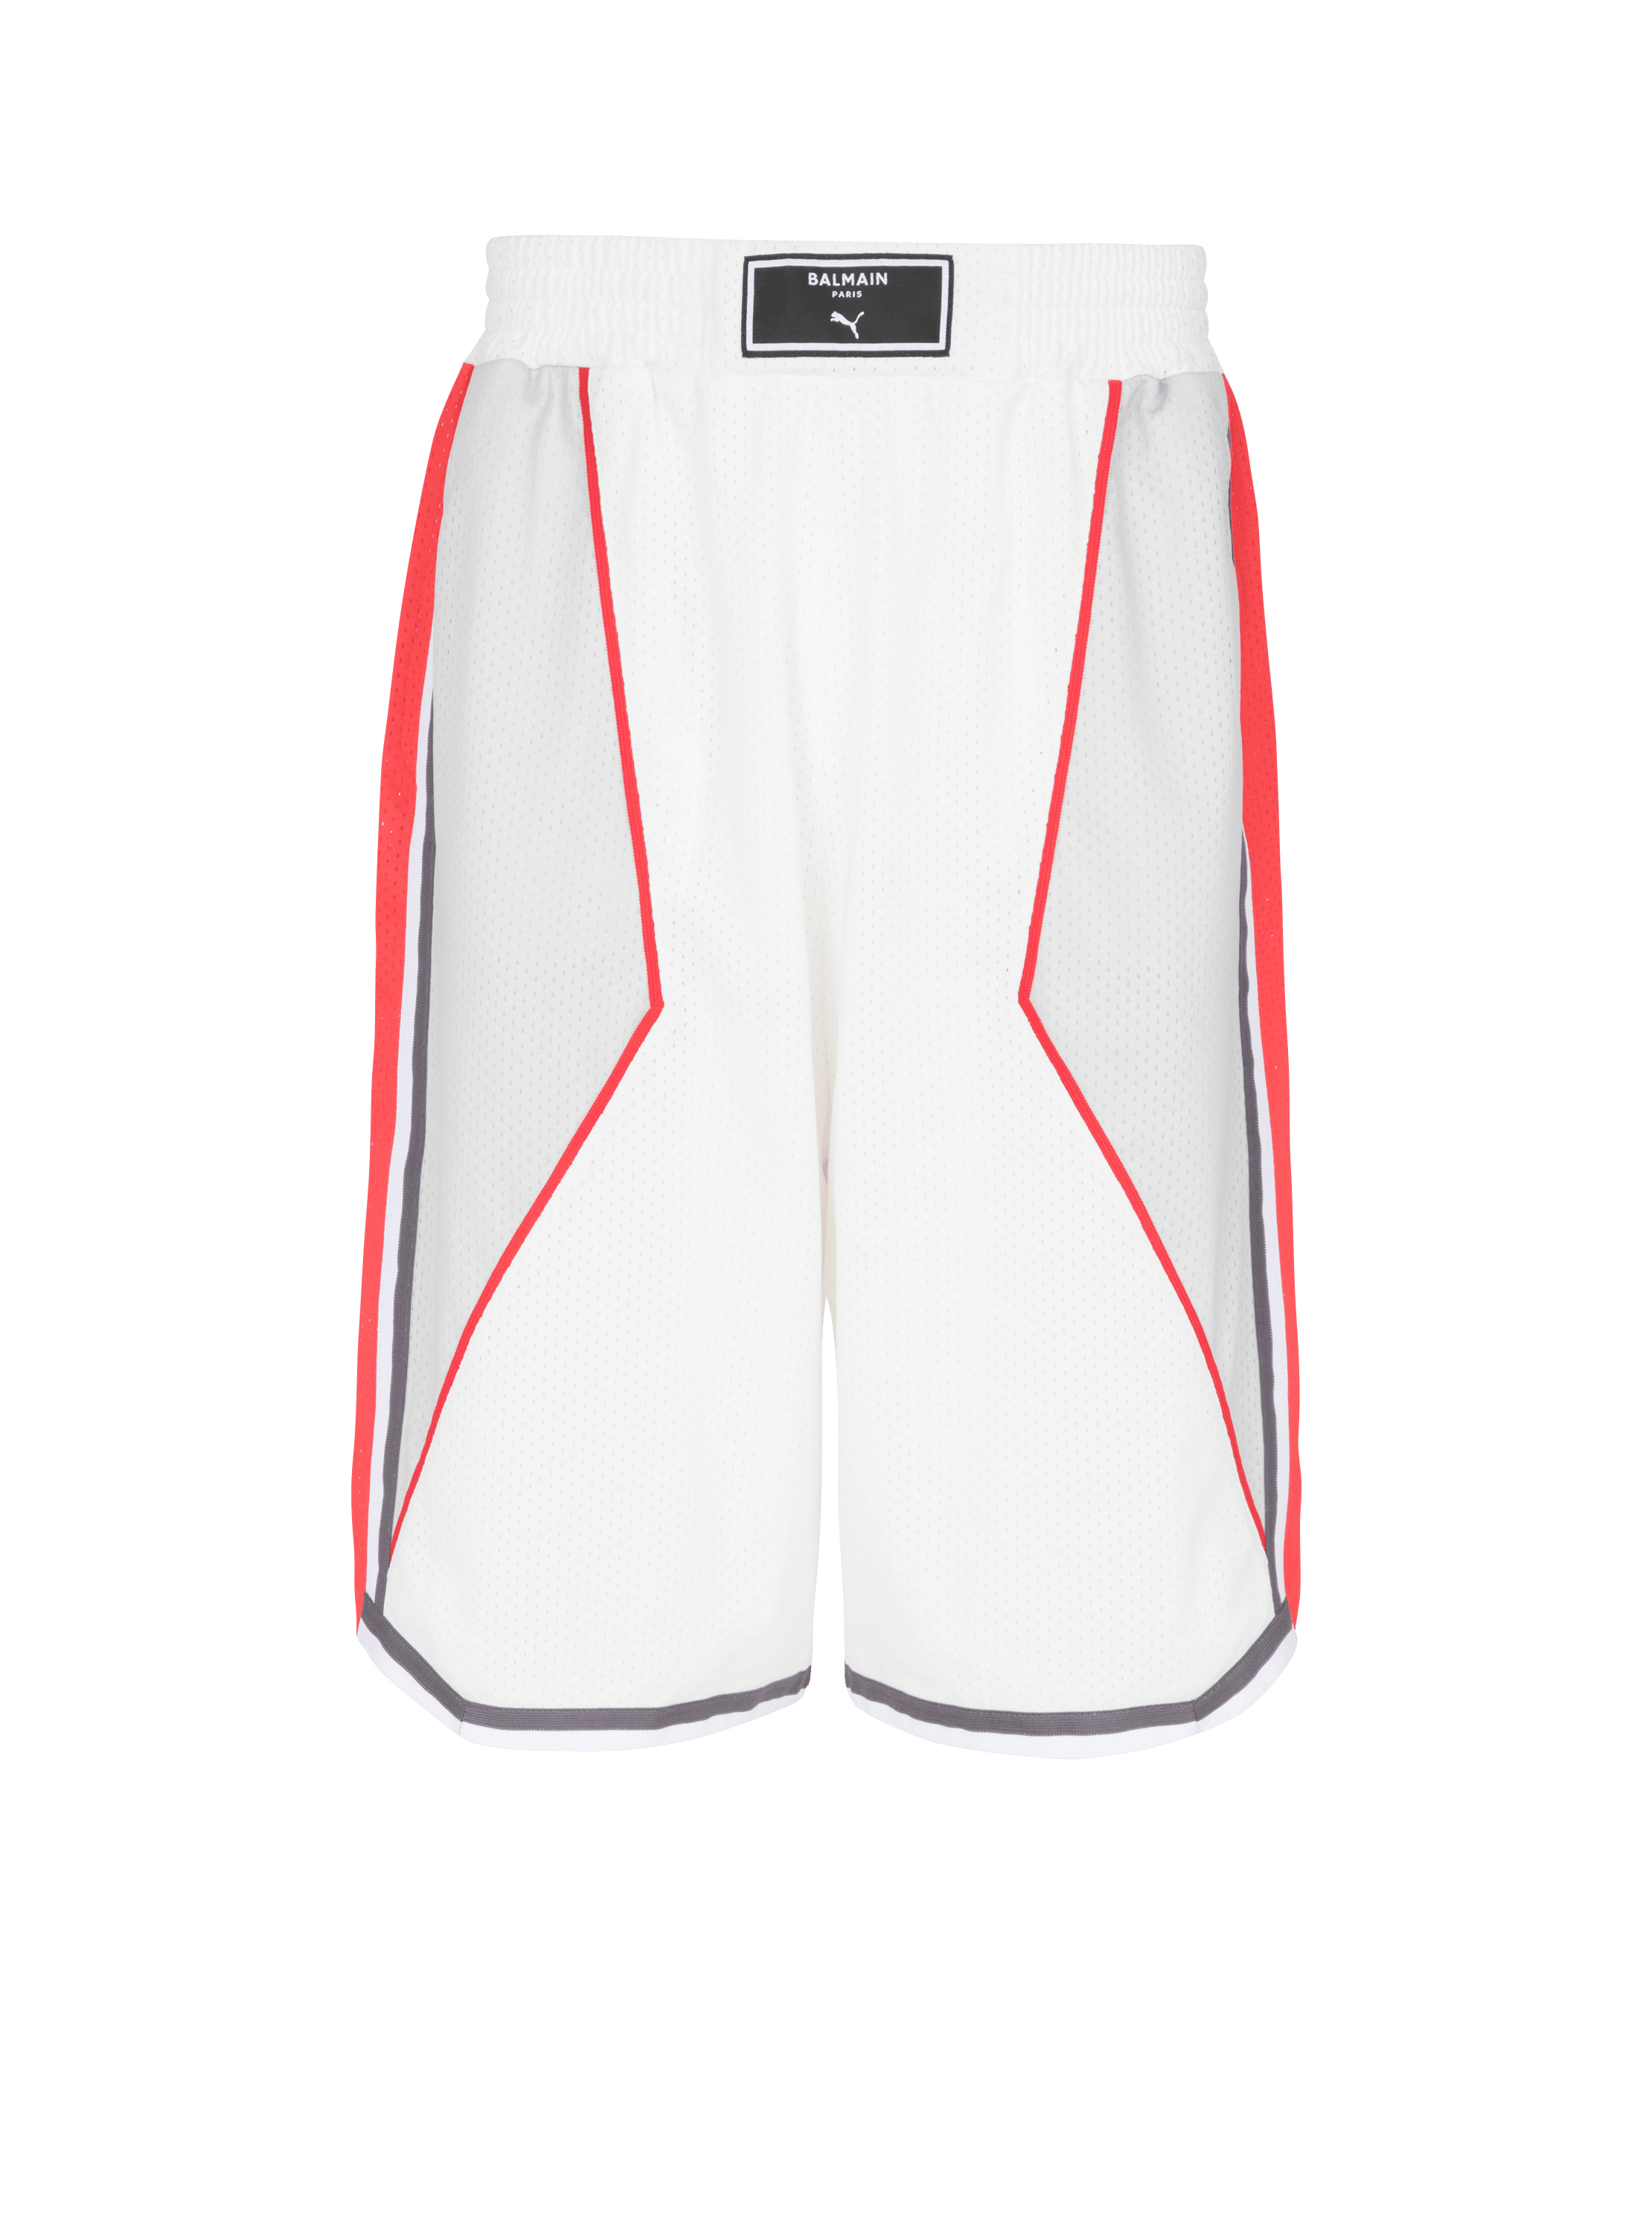 Balmain x Puma - Basketball shorts